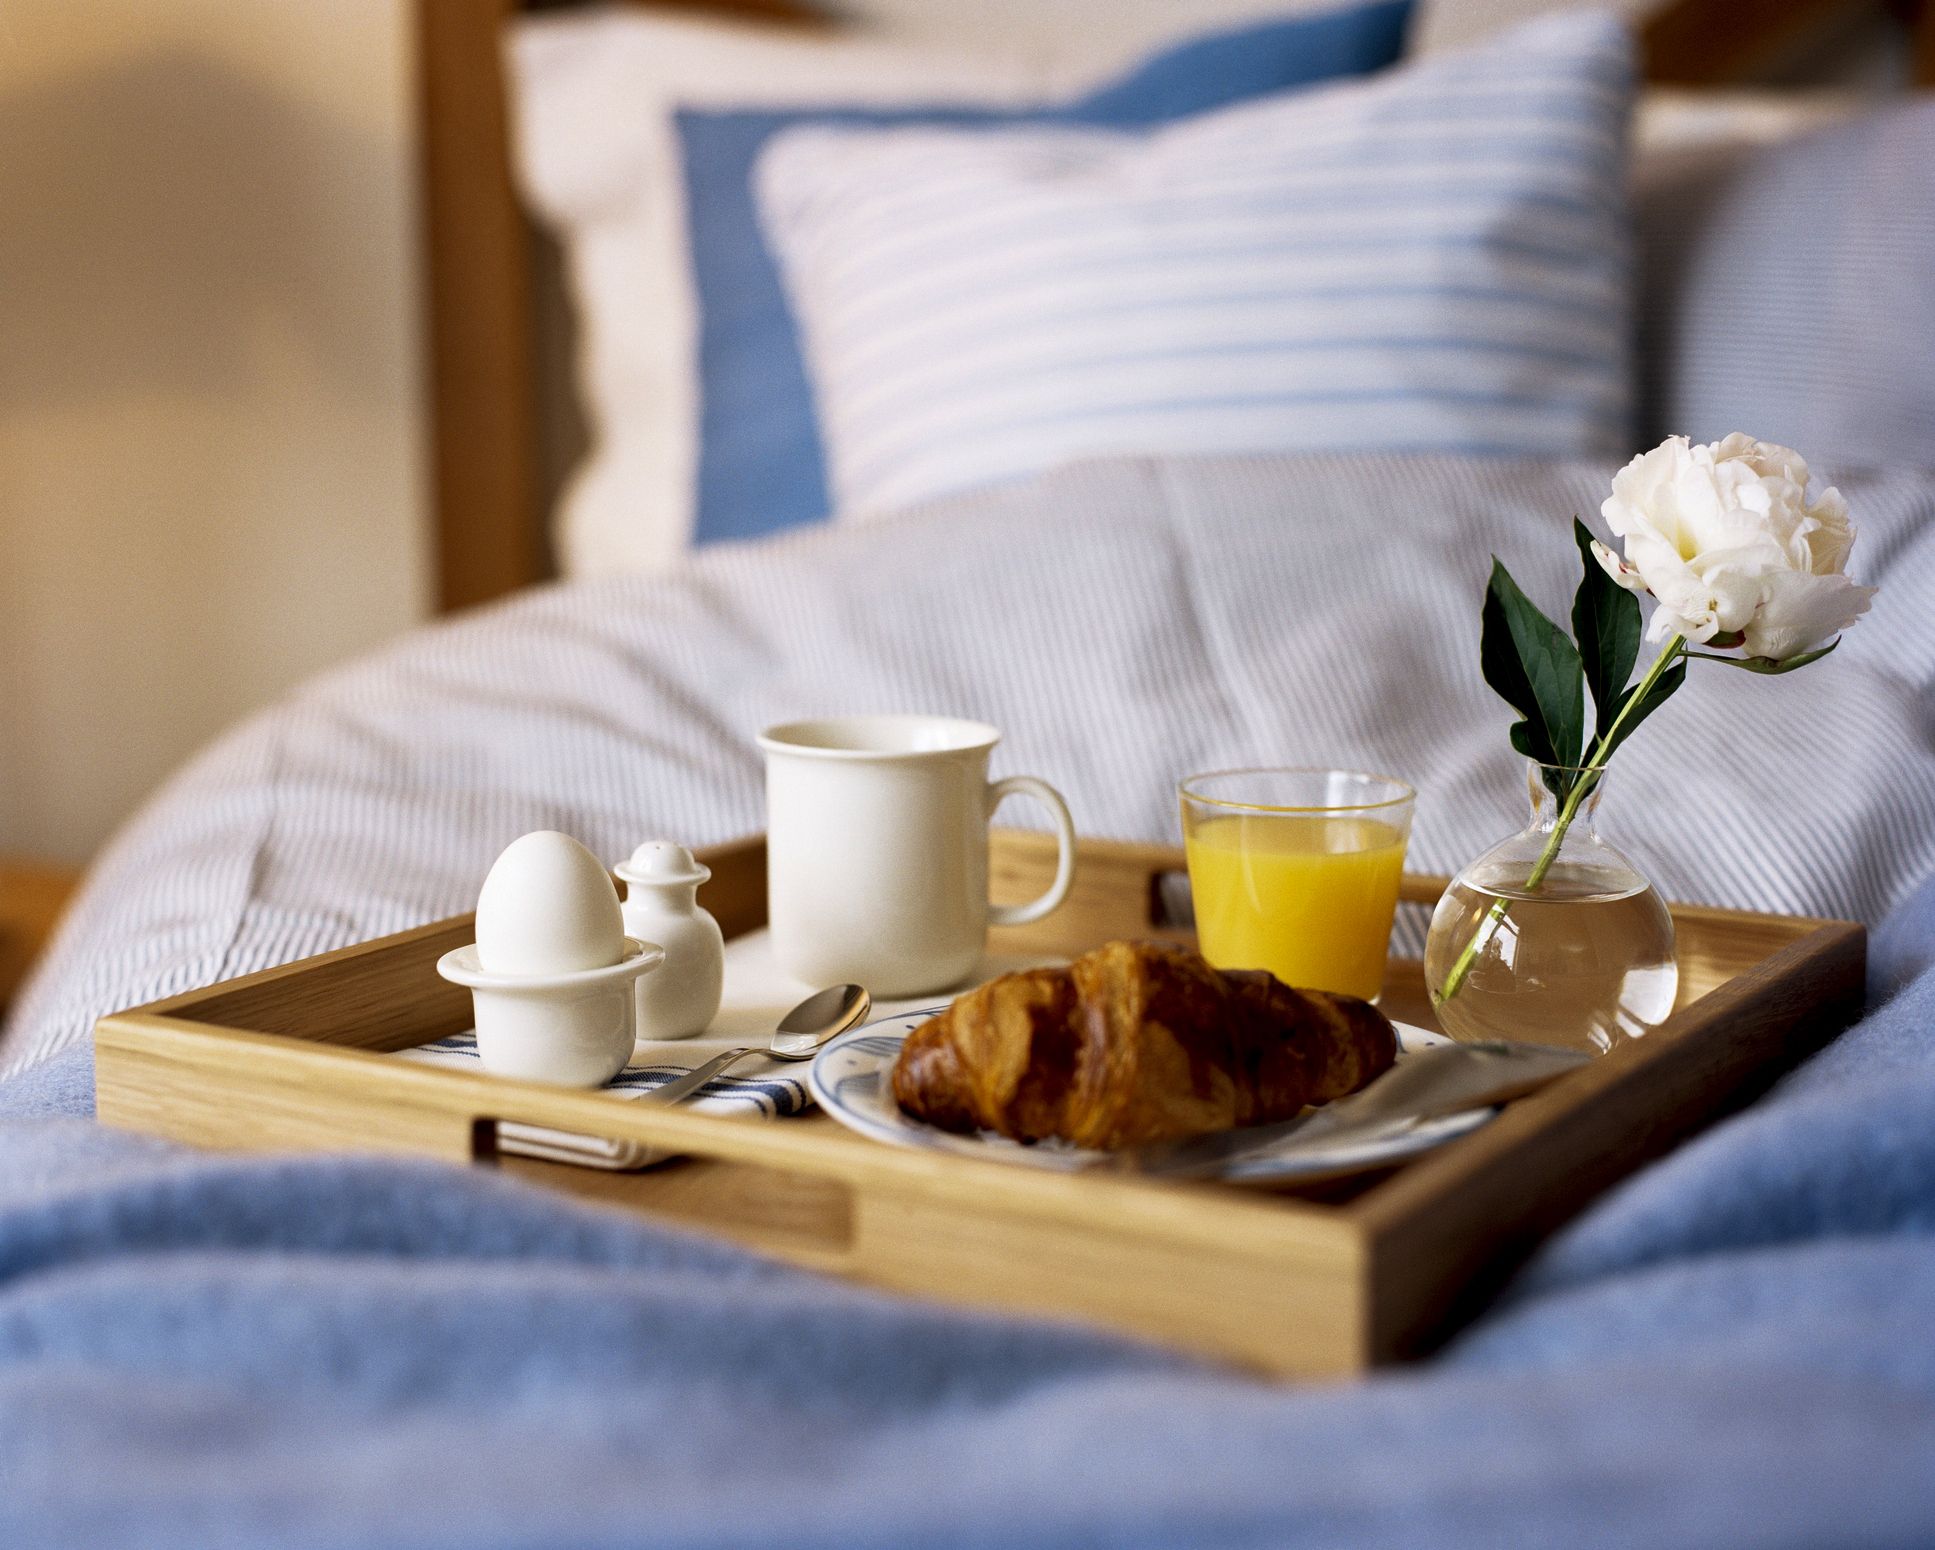 Ютубе постель. Кофе в постель. Завтрак в постель. Романтический завтрак в постель. Романтическое утро.